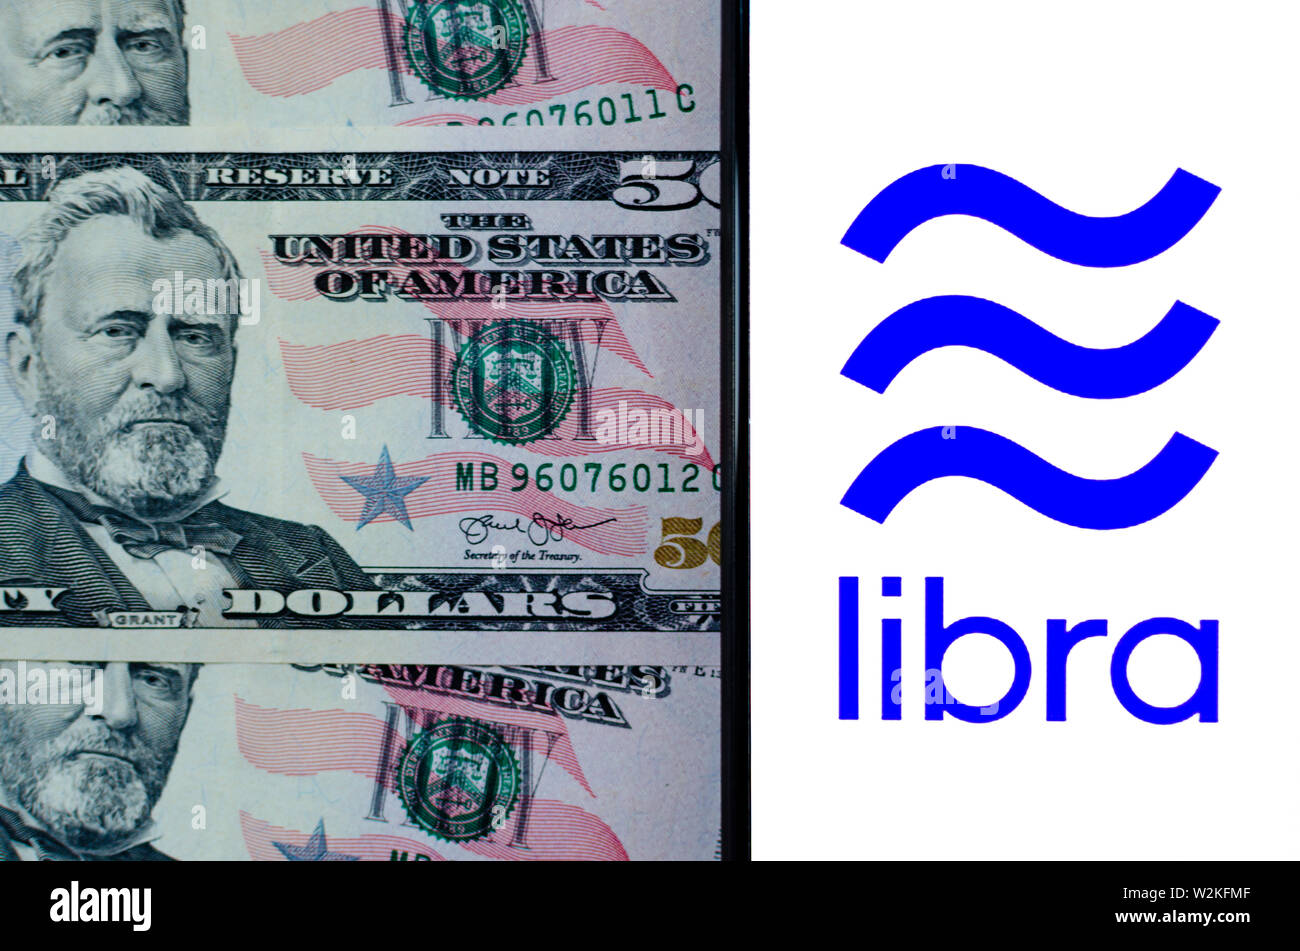 Facebook Waage und 50-Dollarscheine. Foto, dass Ähnlichkeit Highlight der Waage-Logo, sowie Symbol auf 50 Dollar Banknoten. Stockfoto